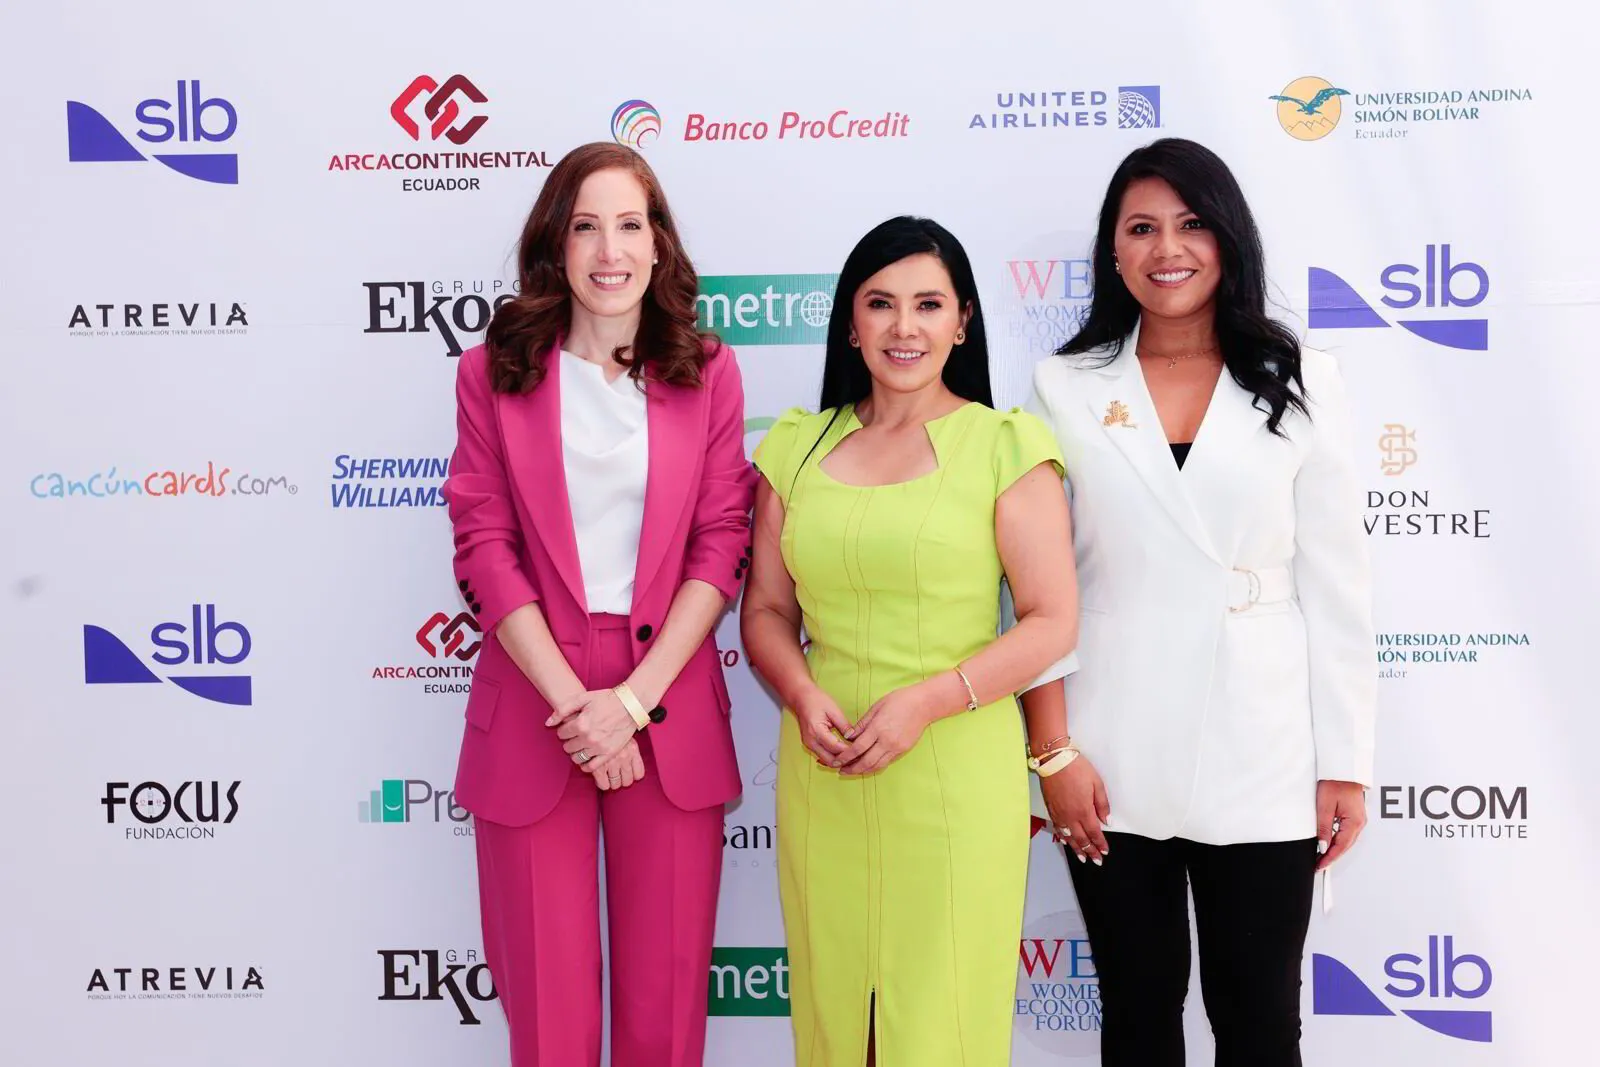 Delegación Española Destaca en su Participación en el Women Economic Forum, el Mayor Evento Internacional para Mujeres